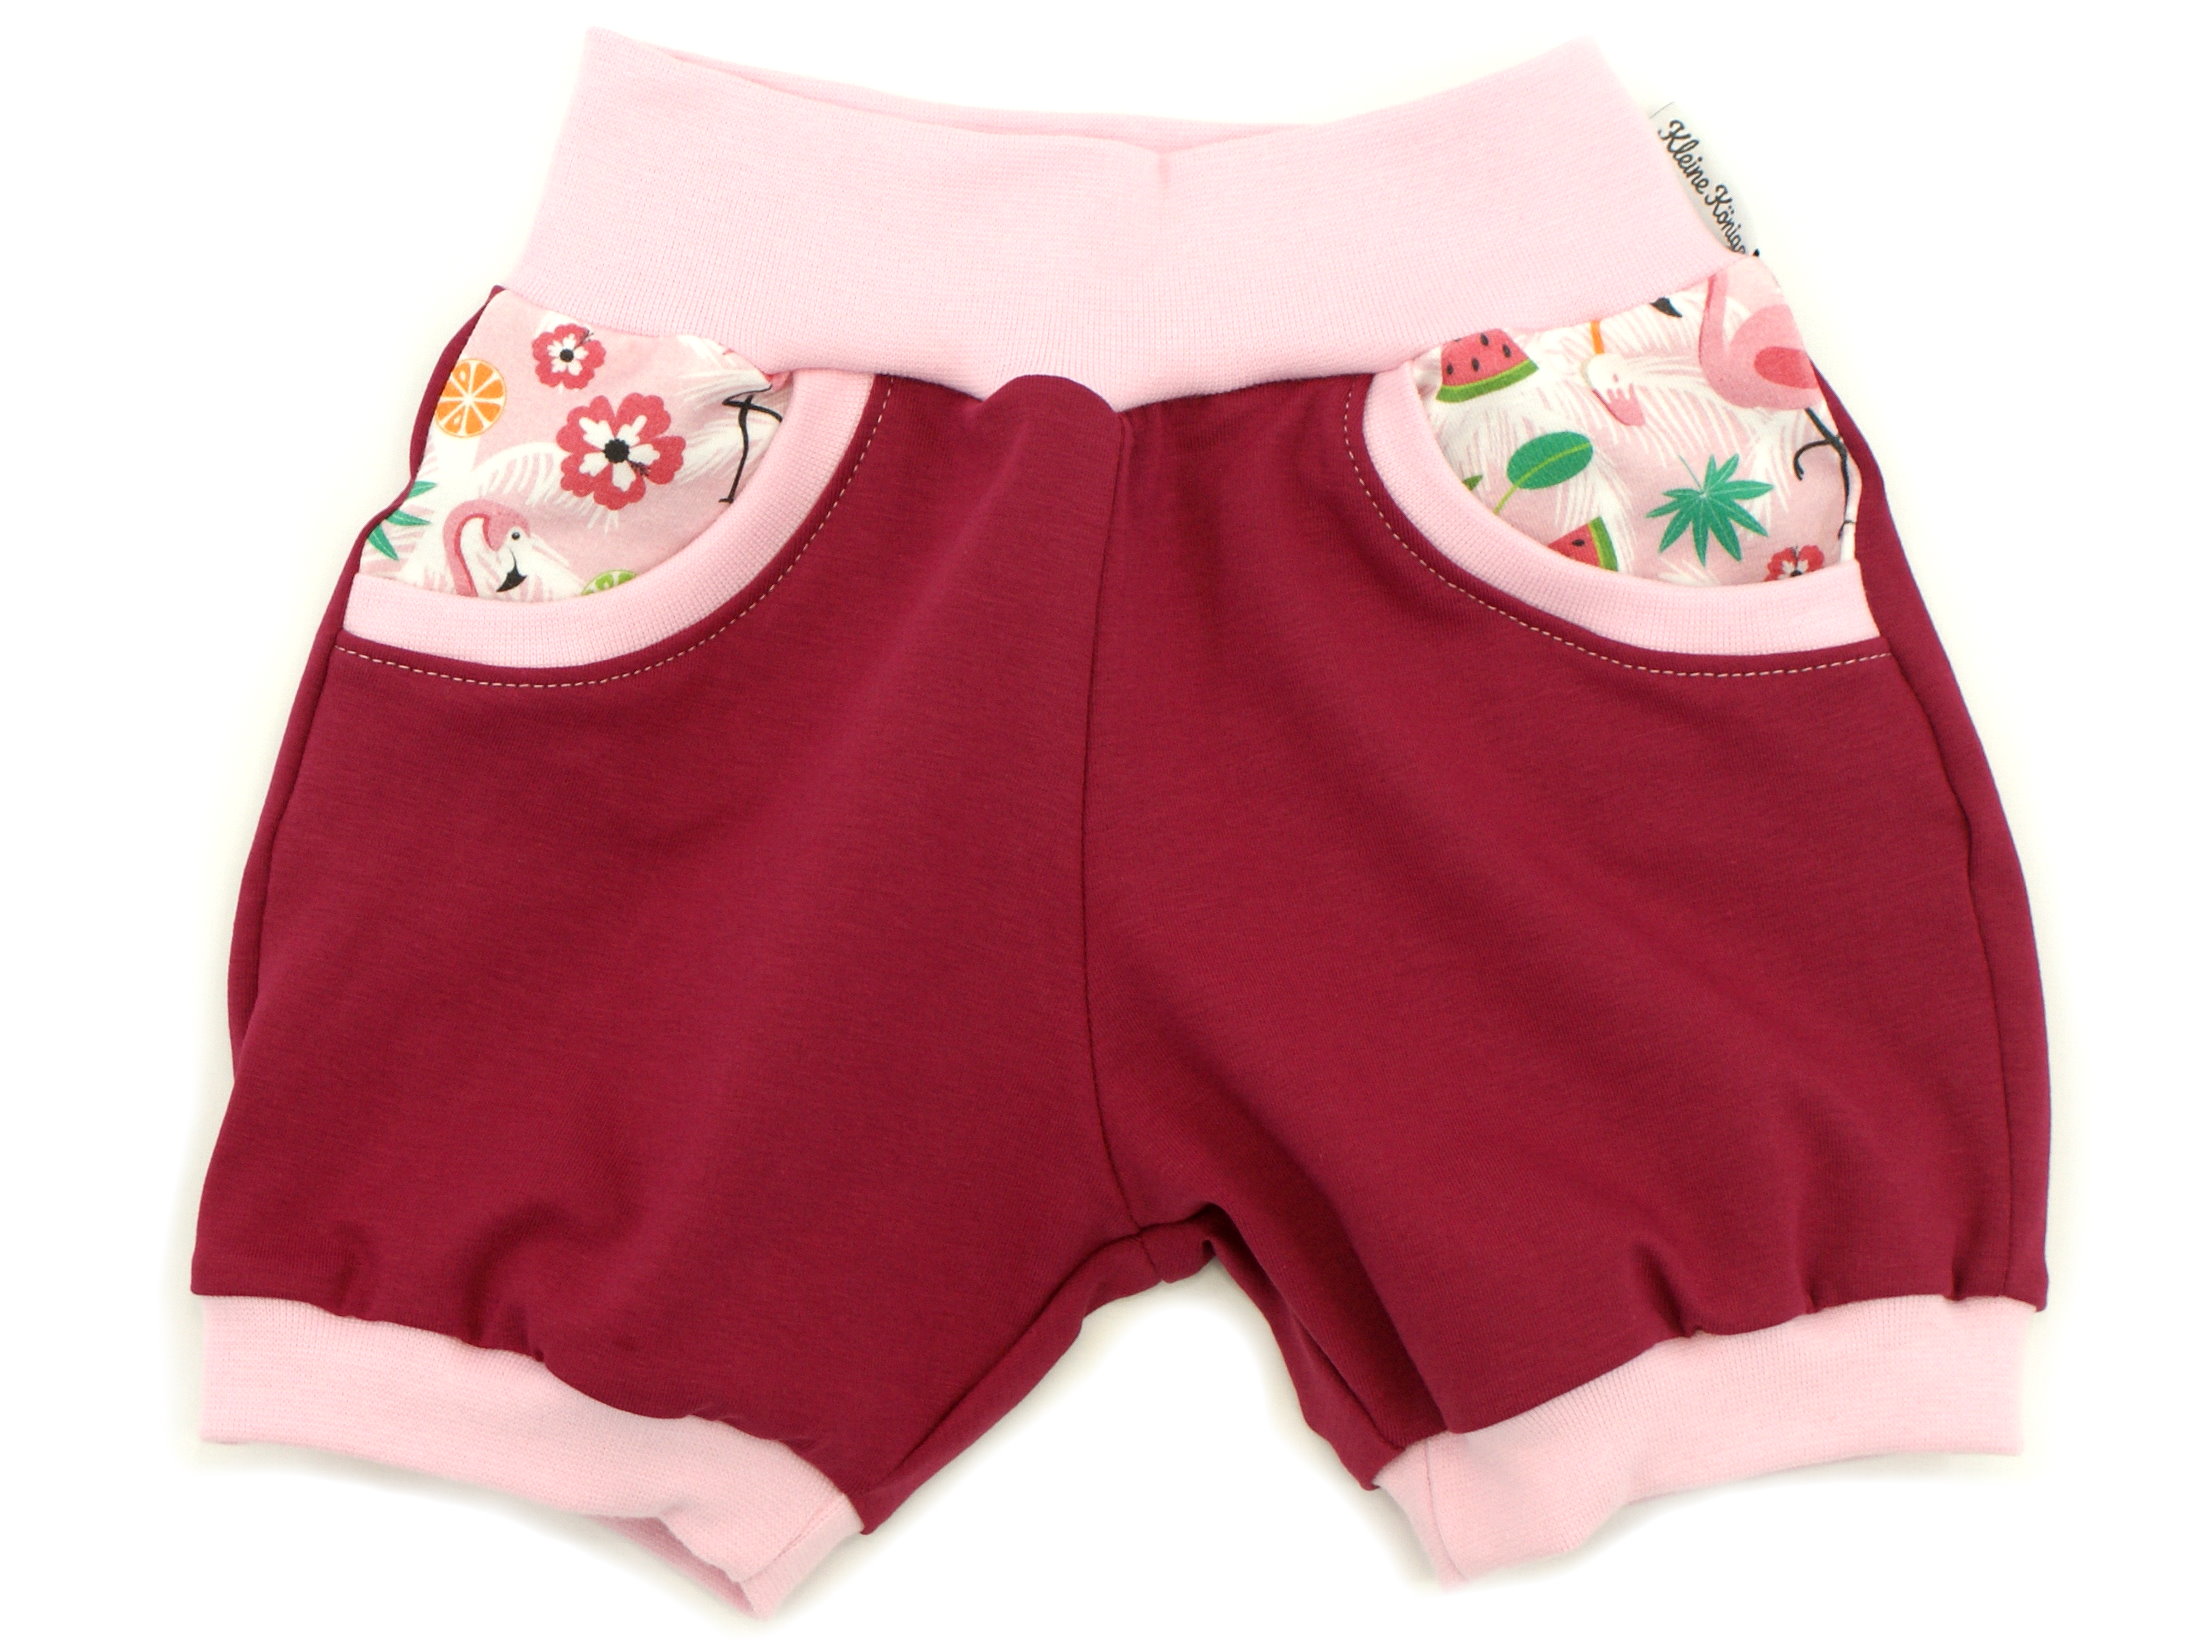 Kinder Sommer Shorts mit Taschen "Flamingo Dance" rosa weinrot